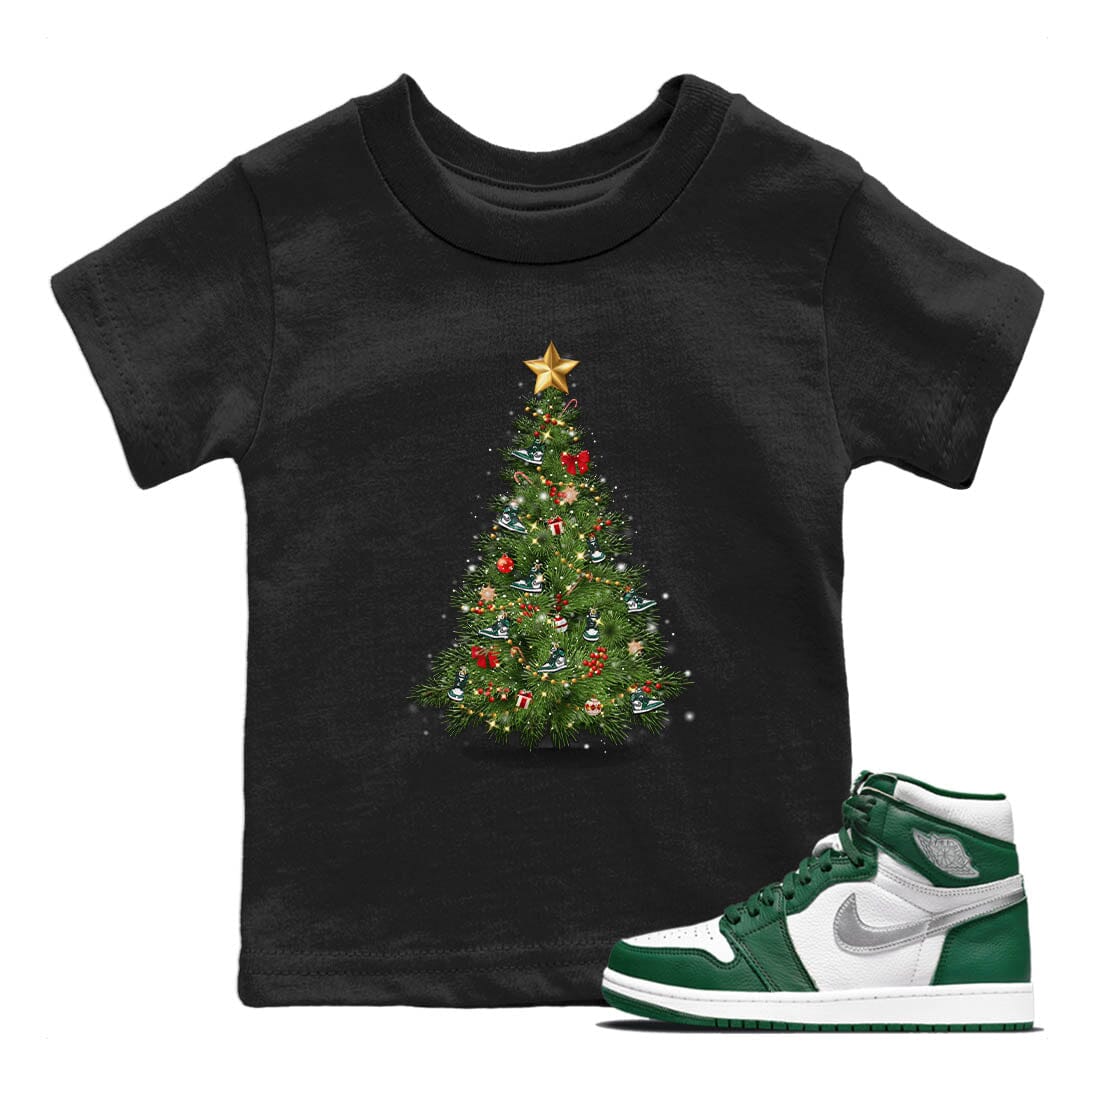 Jordan 1 Gorge Green Sneaker Match Tees Christmas Tree Sneaker Tees Jordan 1 Gorge Green Sneaker Release Tees Kids Shirts